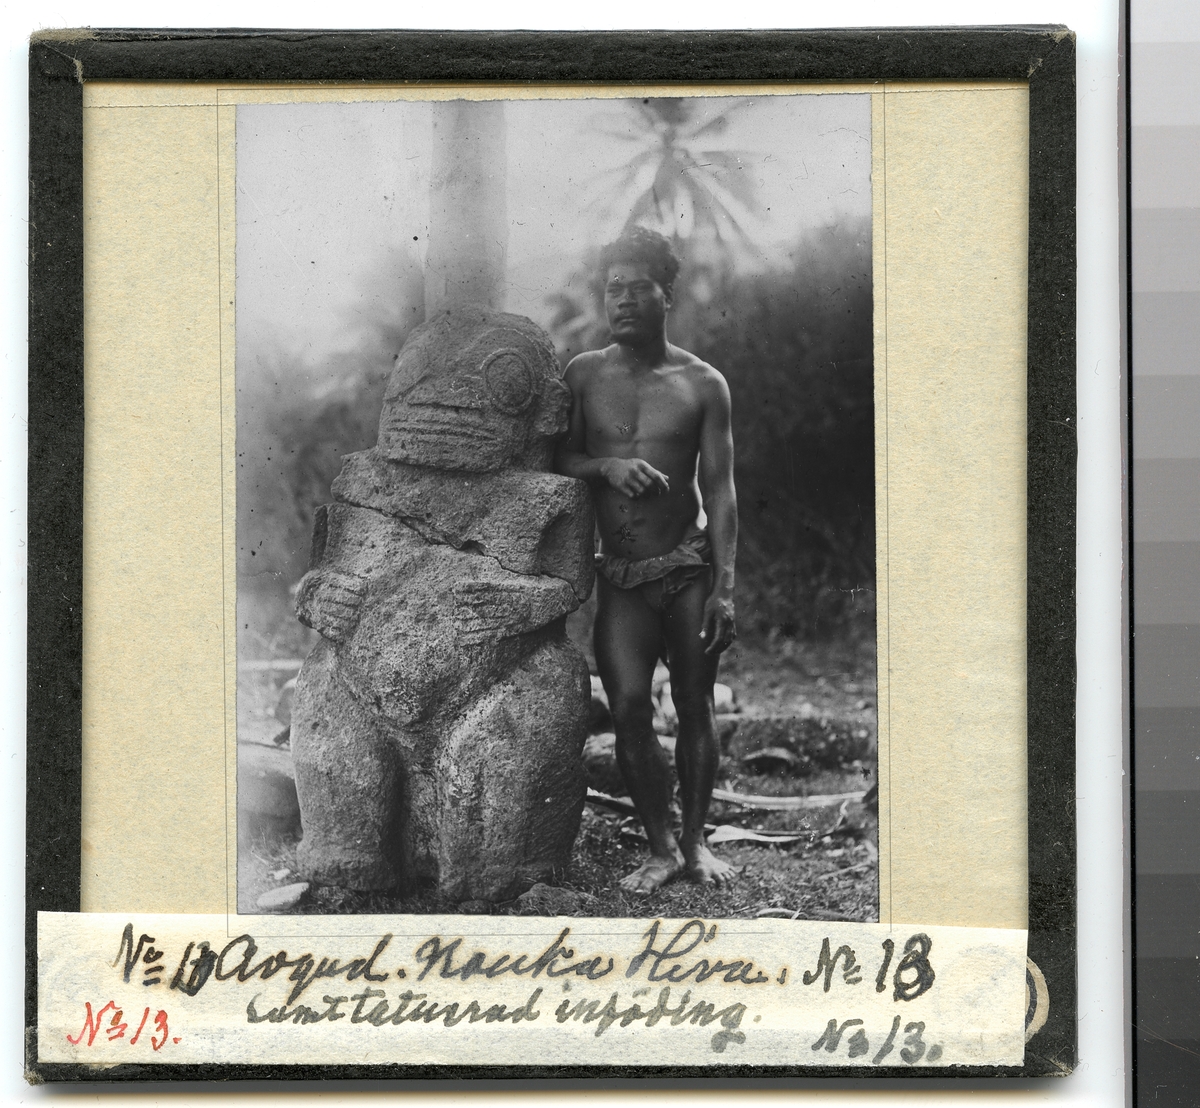 Bilden visar en urinvånare som har tagit uppställning för fotografering bredvid en stenskulptur.